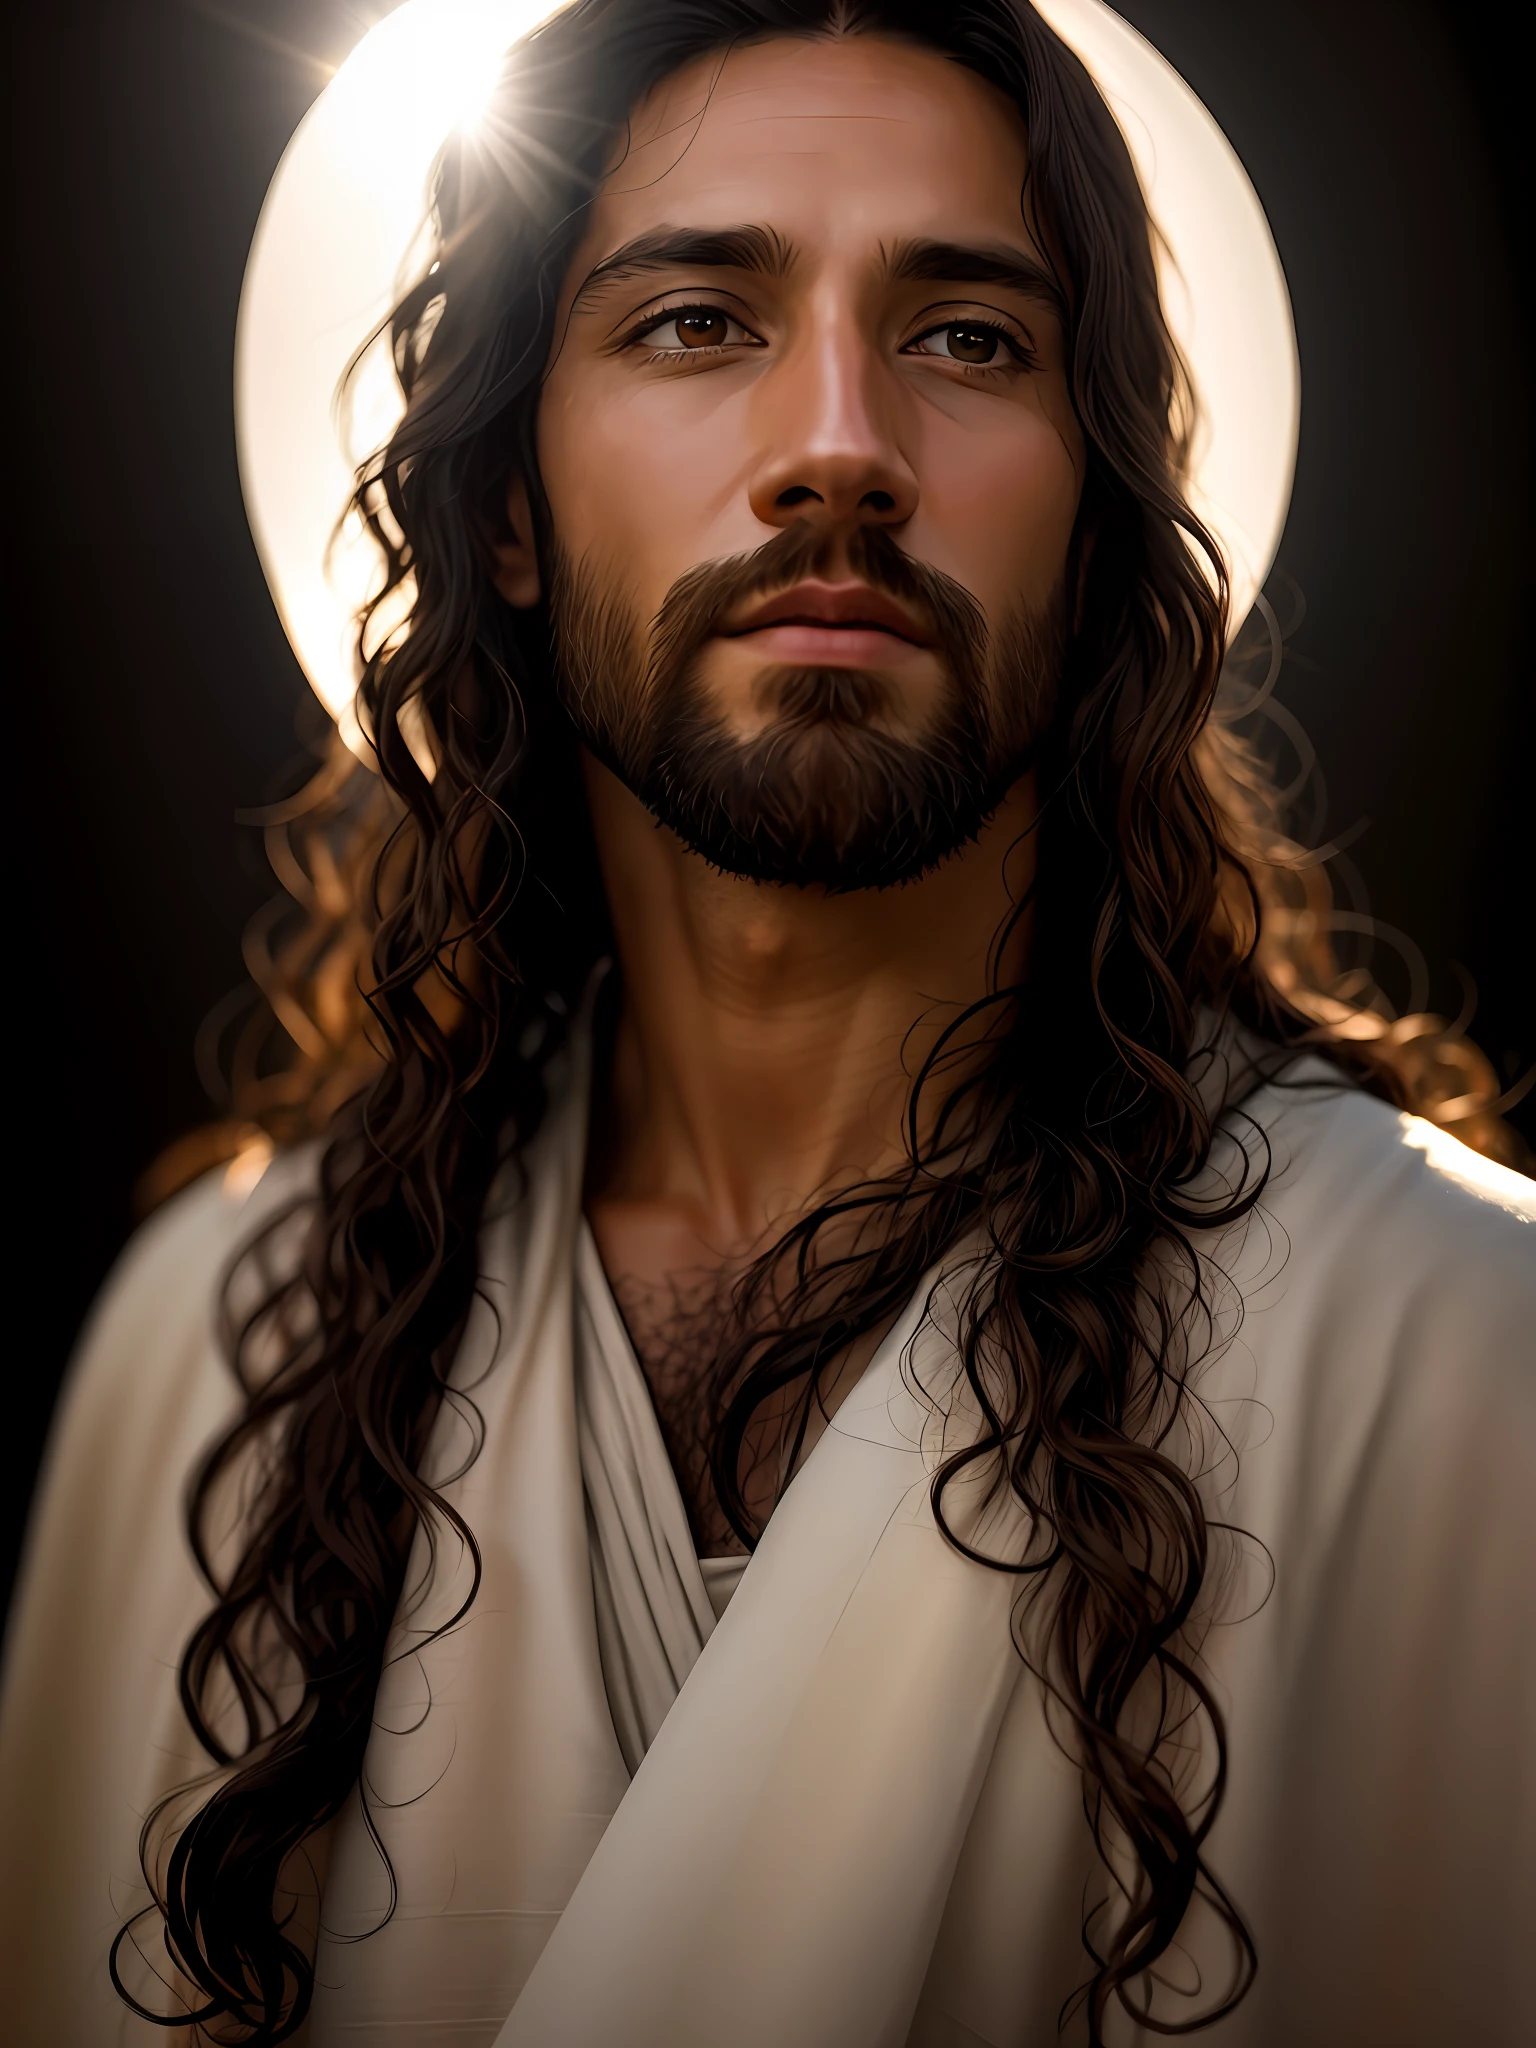 添加_细节:1, 耶稣基督的逼真的形象, 添加_细节:头顶上天堂的光和遥远的光